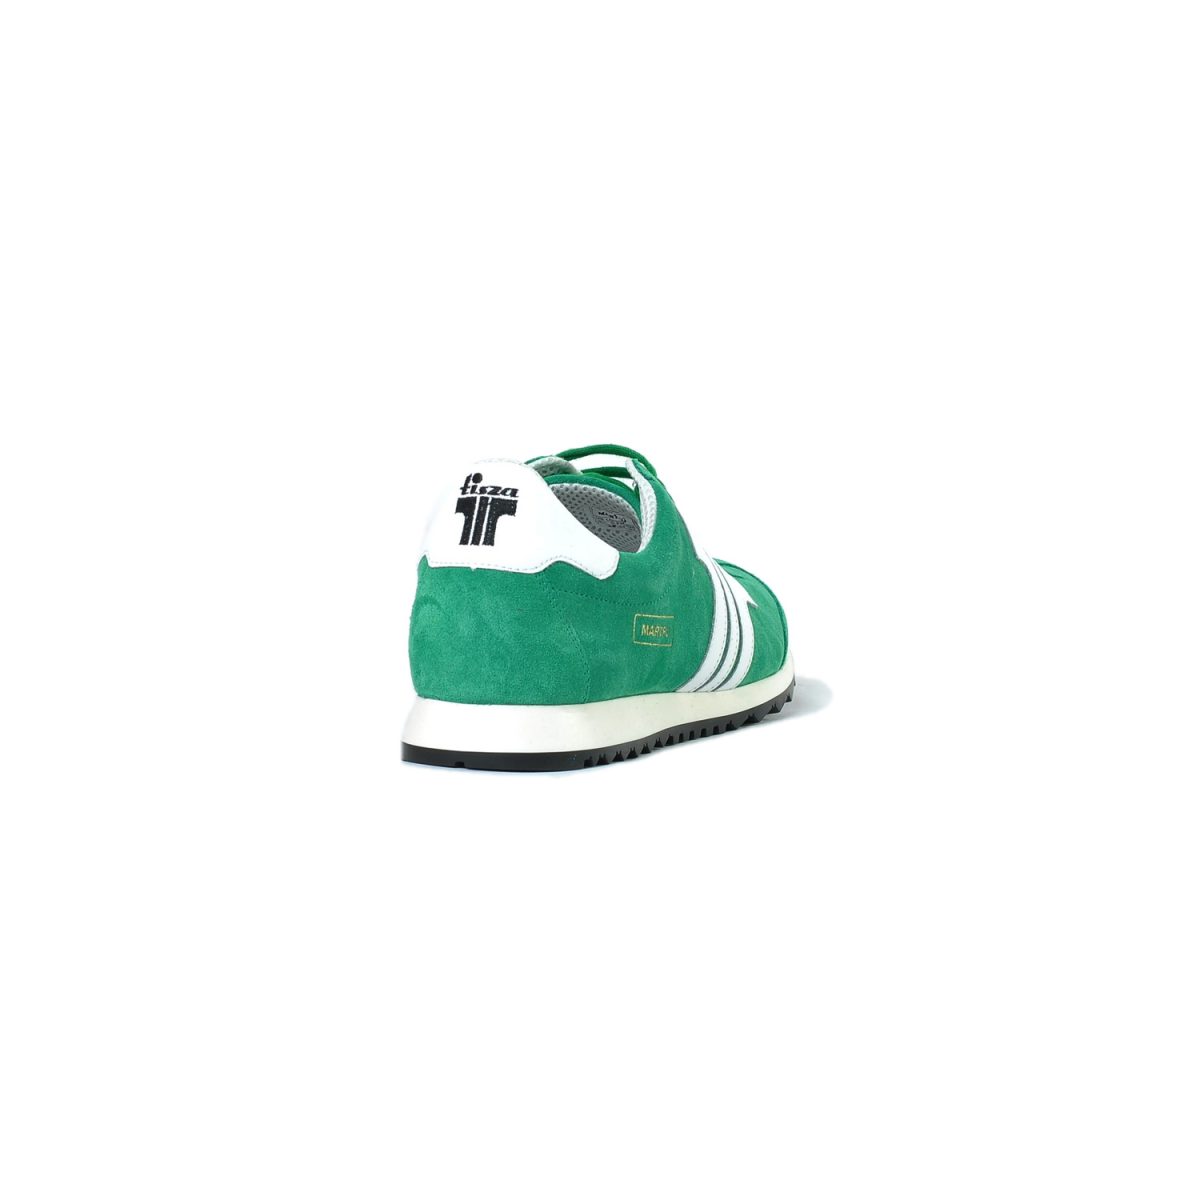 Tisza shoes - Martfű - Green-white